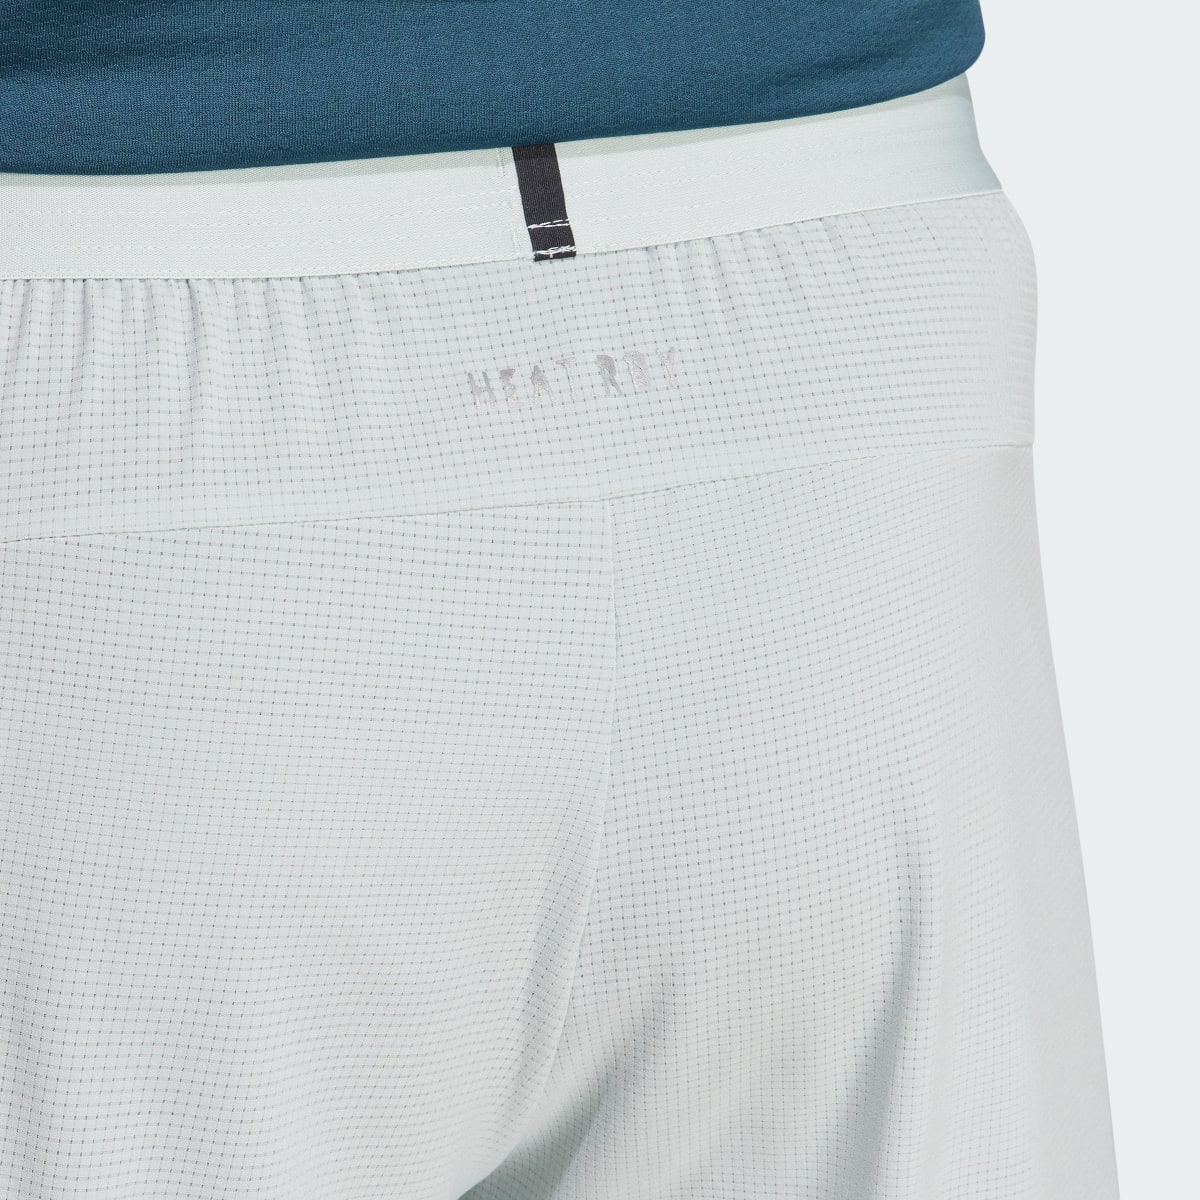 Adidas Designed for Training HIIT Training Shorts. 6